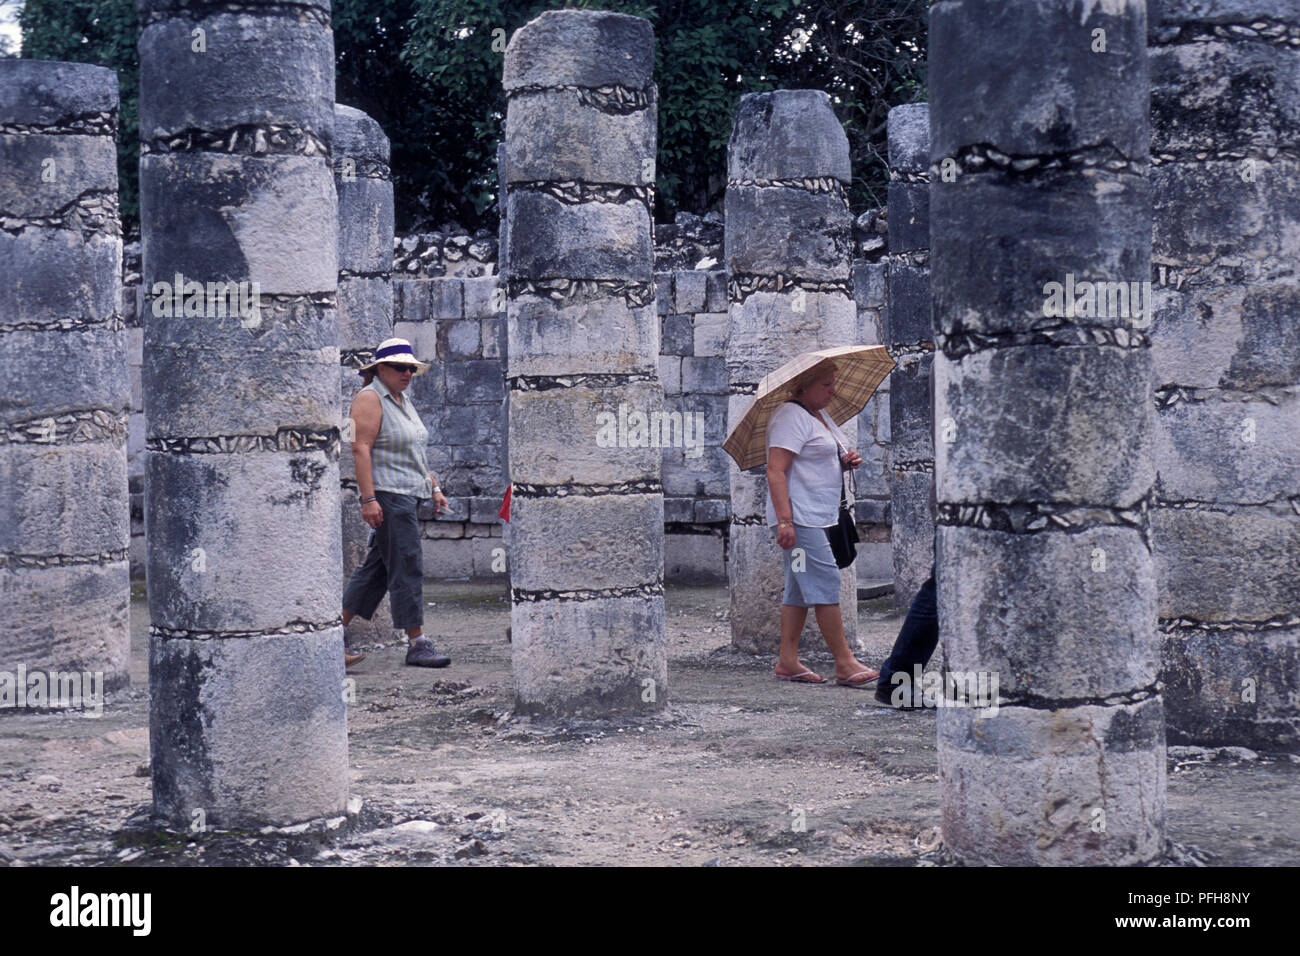 The Maya Ruins of Chichen Itza in the Province Yucatan in Mexico in Central America.     Mexico, Chichen Itza, January 2009. Stock Photo